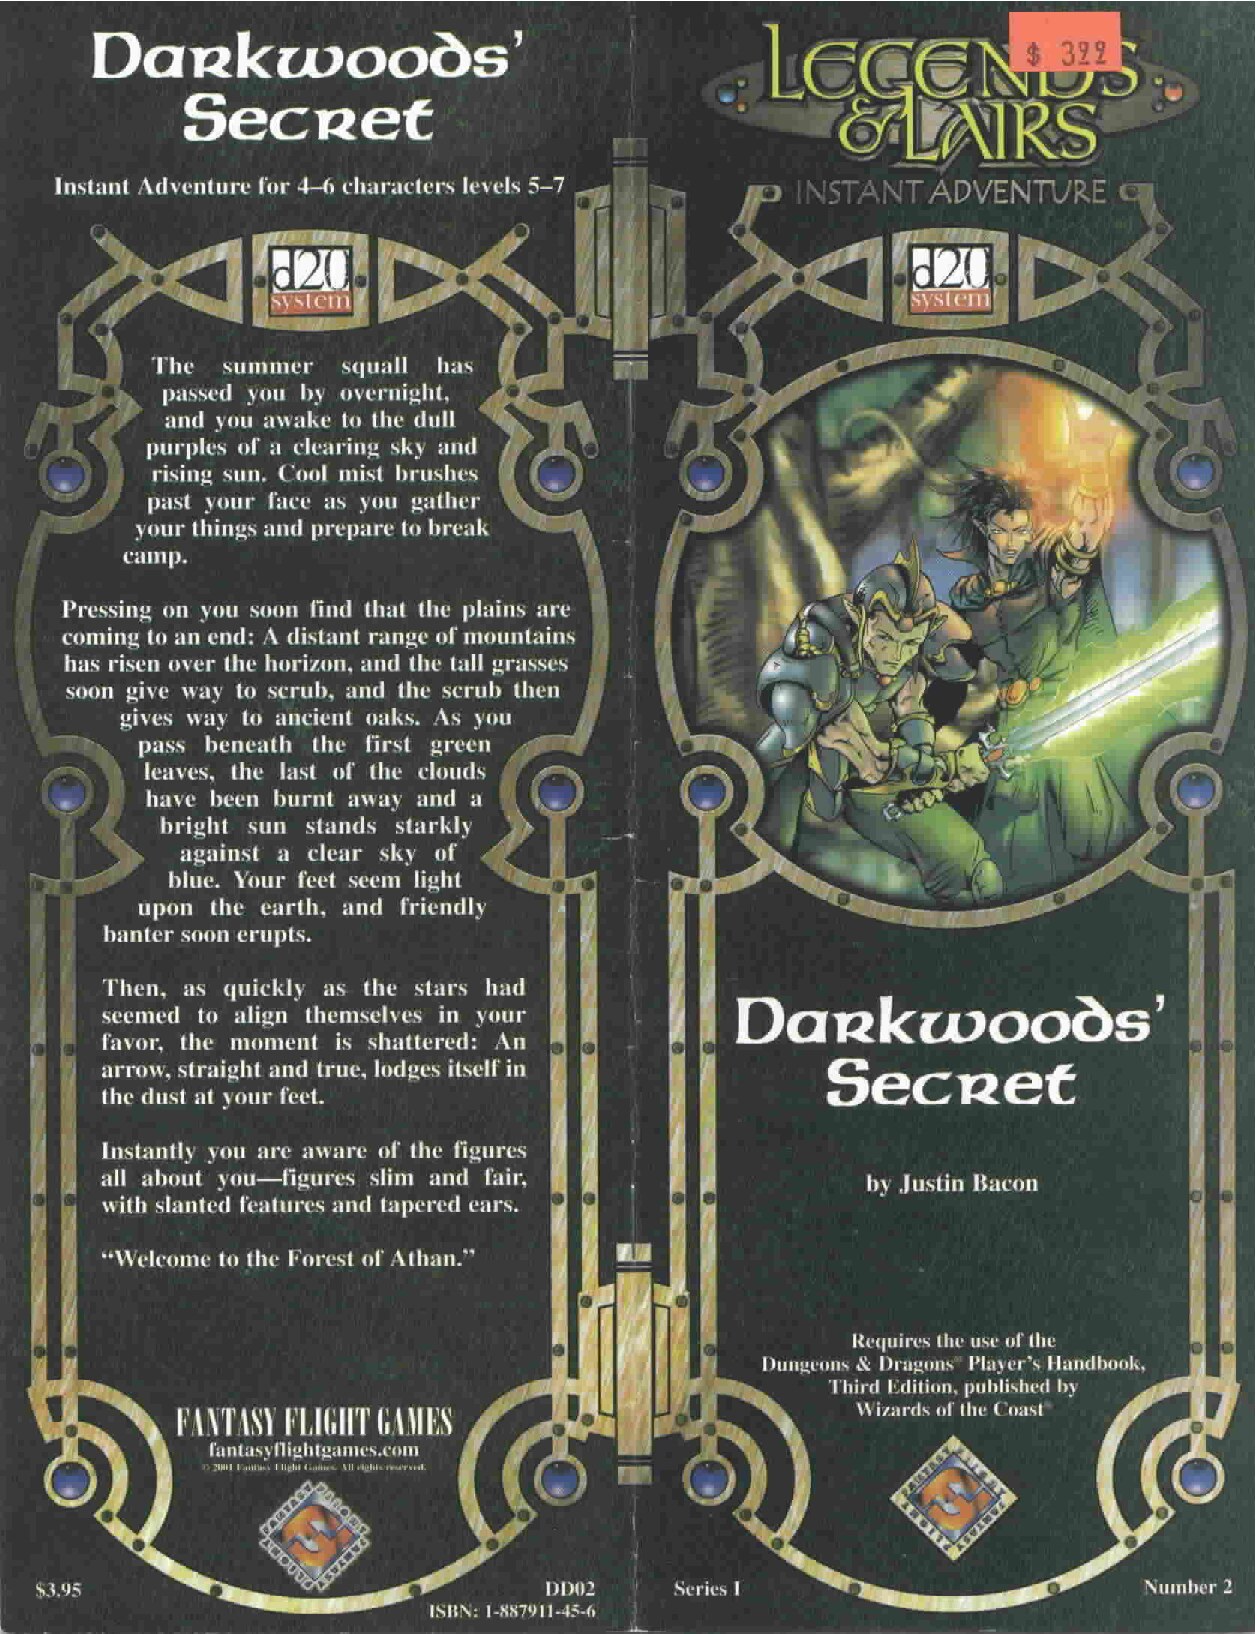 Darkwoods' Secret